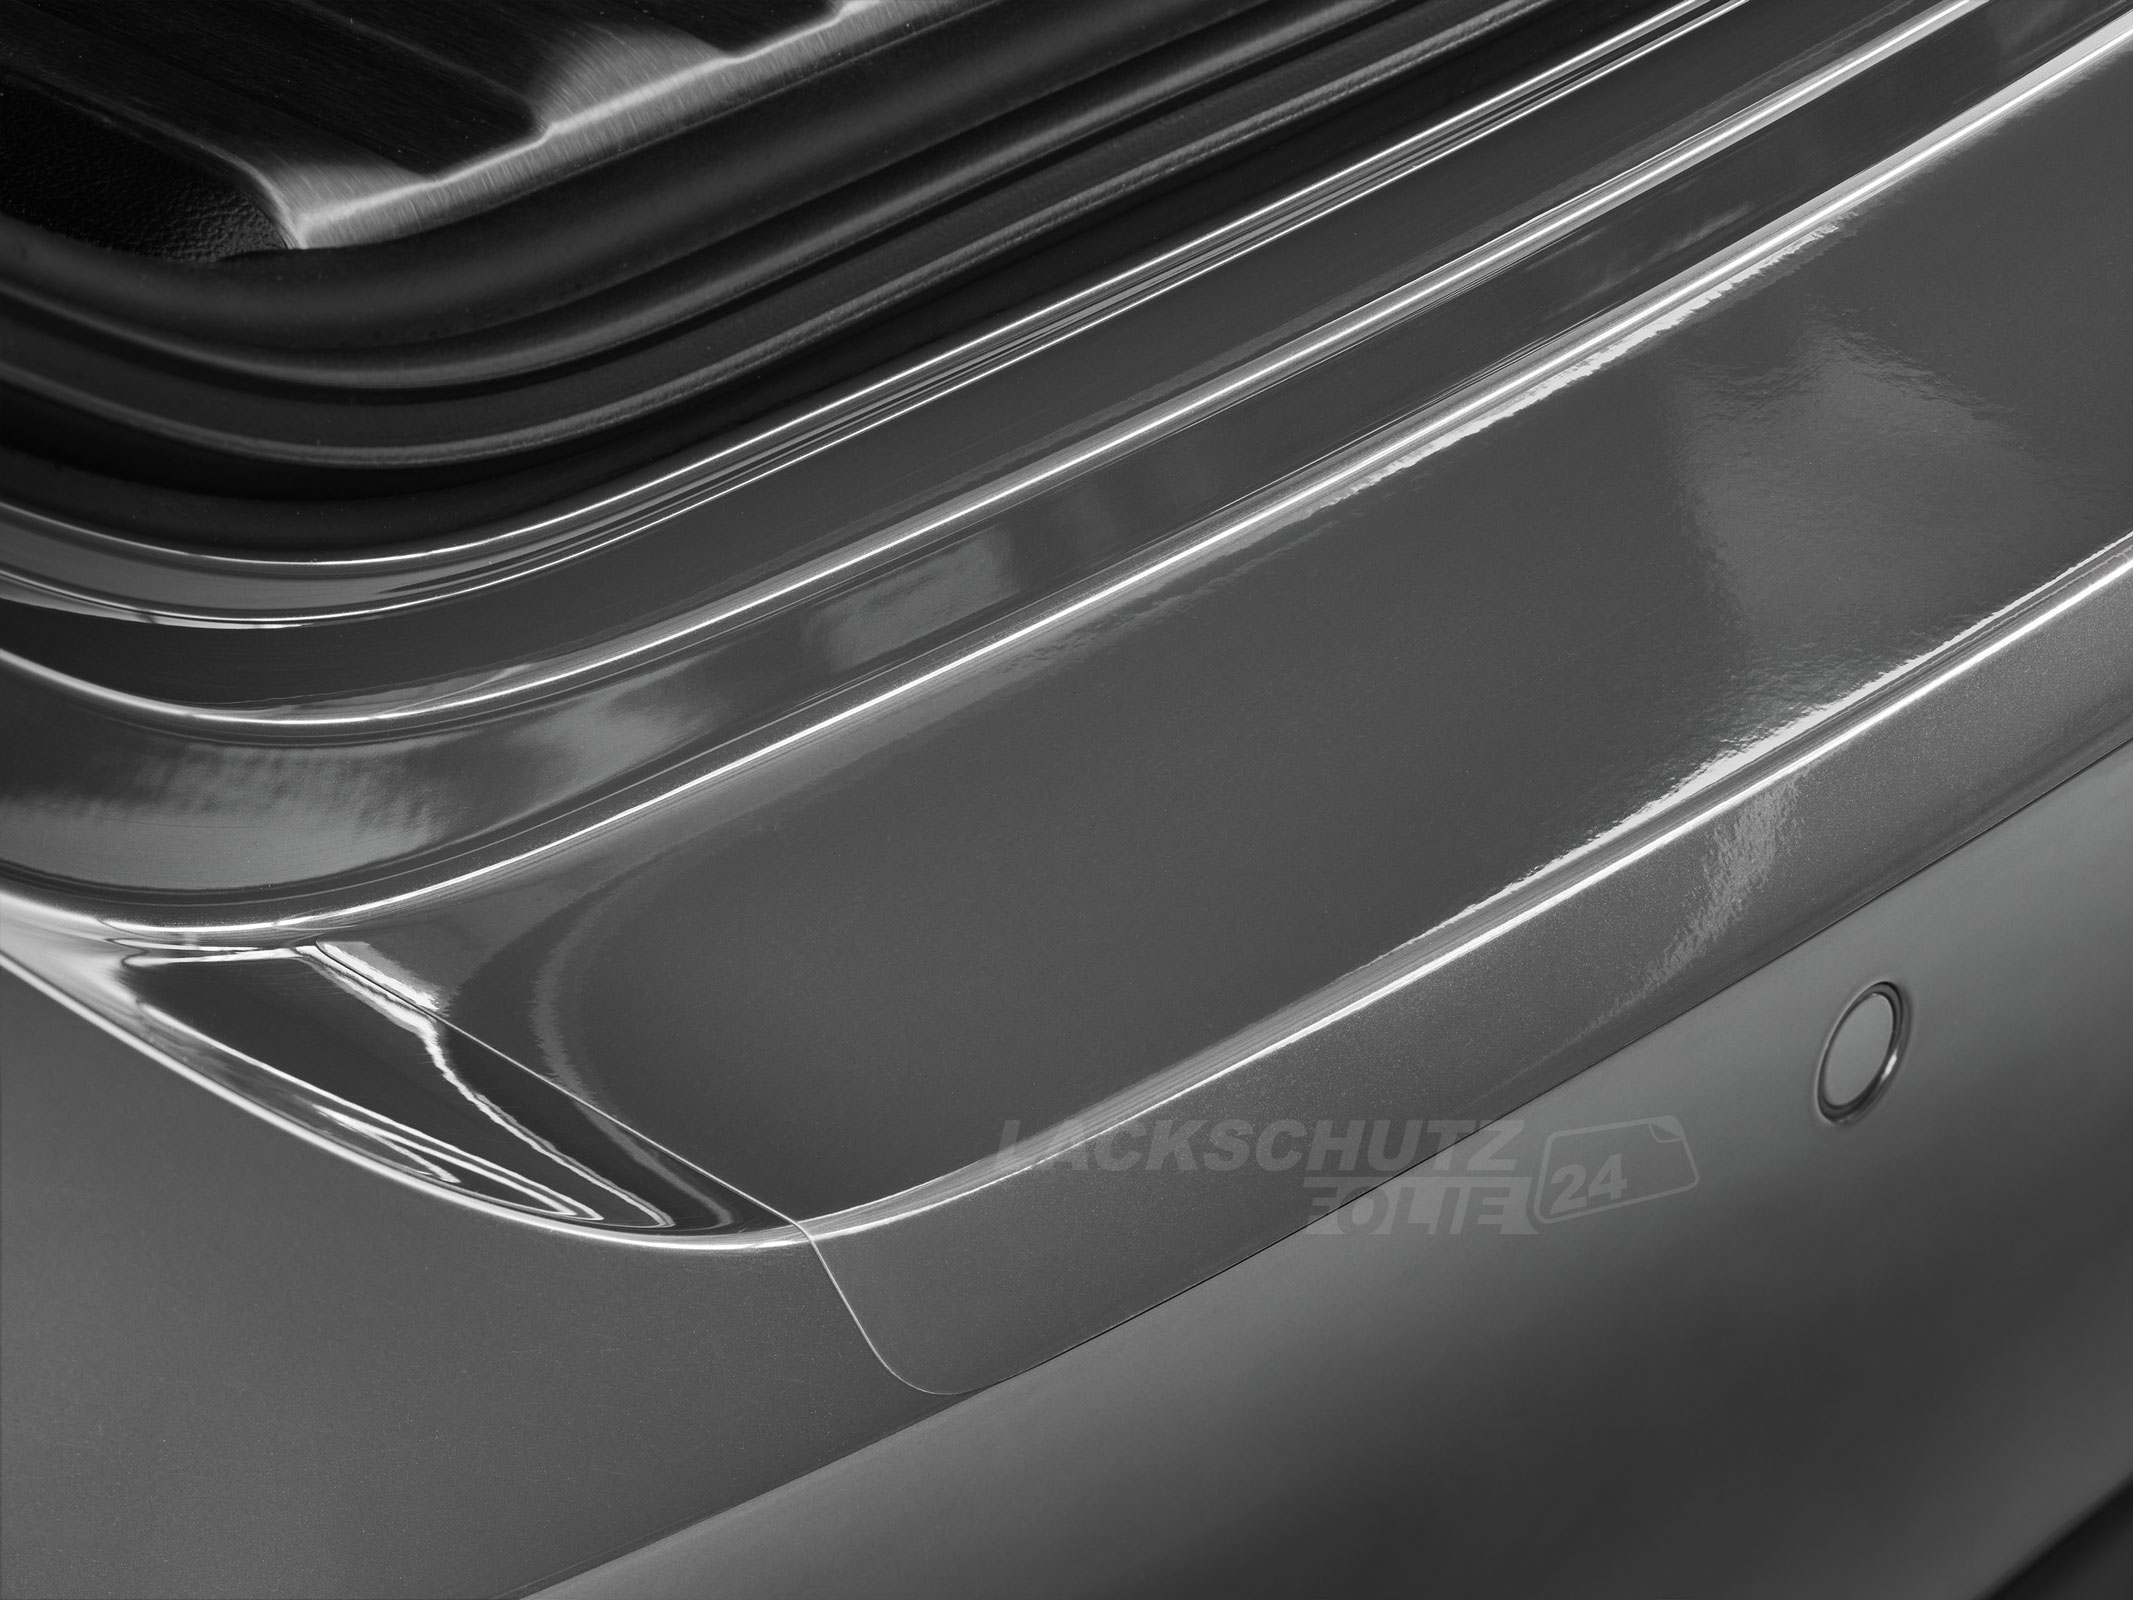 Ladekantenschutzfolie - Transparent Glatt Hochglänzend 150 µm stark für VW / Volkswagen Beetle 21th (II) Facelift, Typ 5C, ab BJ 2016